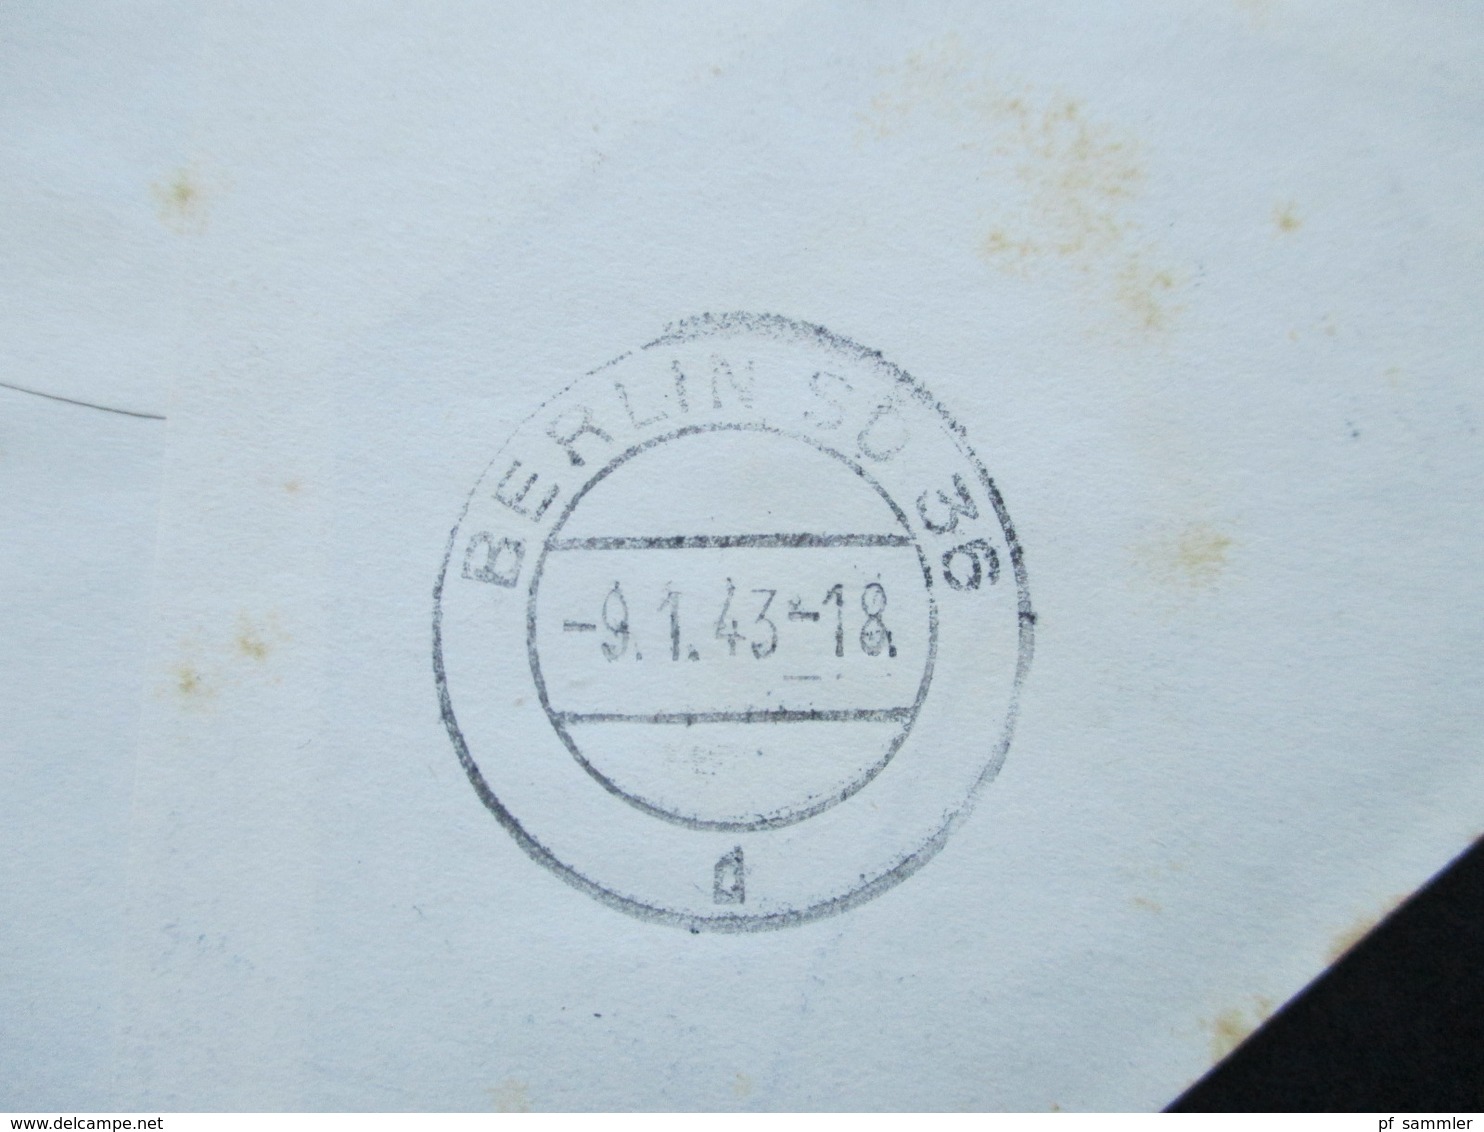 Böhmen Und Mähren 1942 / 43 SST / Sonderbeleg Ca. 3 Monate Später Echt Gelaufen Prag - Berlin! R-Brief Prag 1 17830 F - Covers & Documents